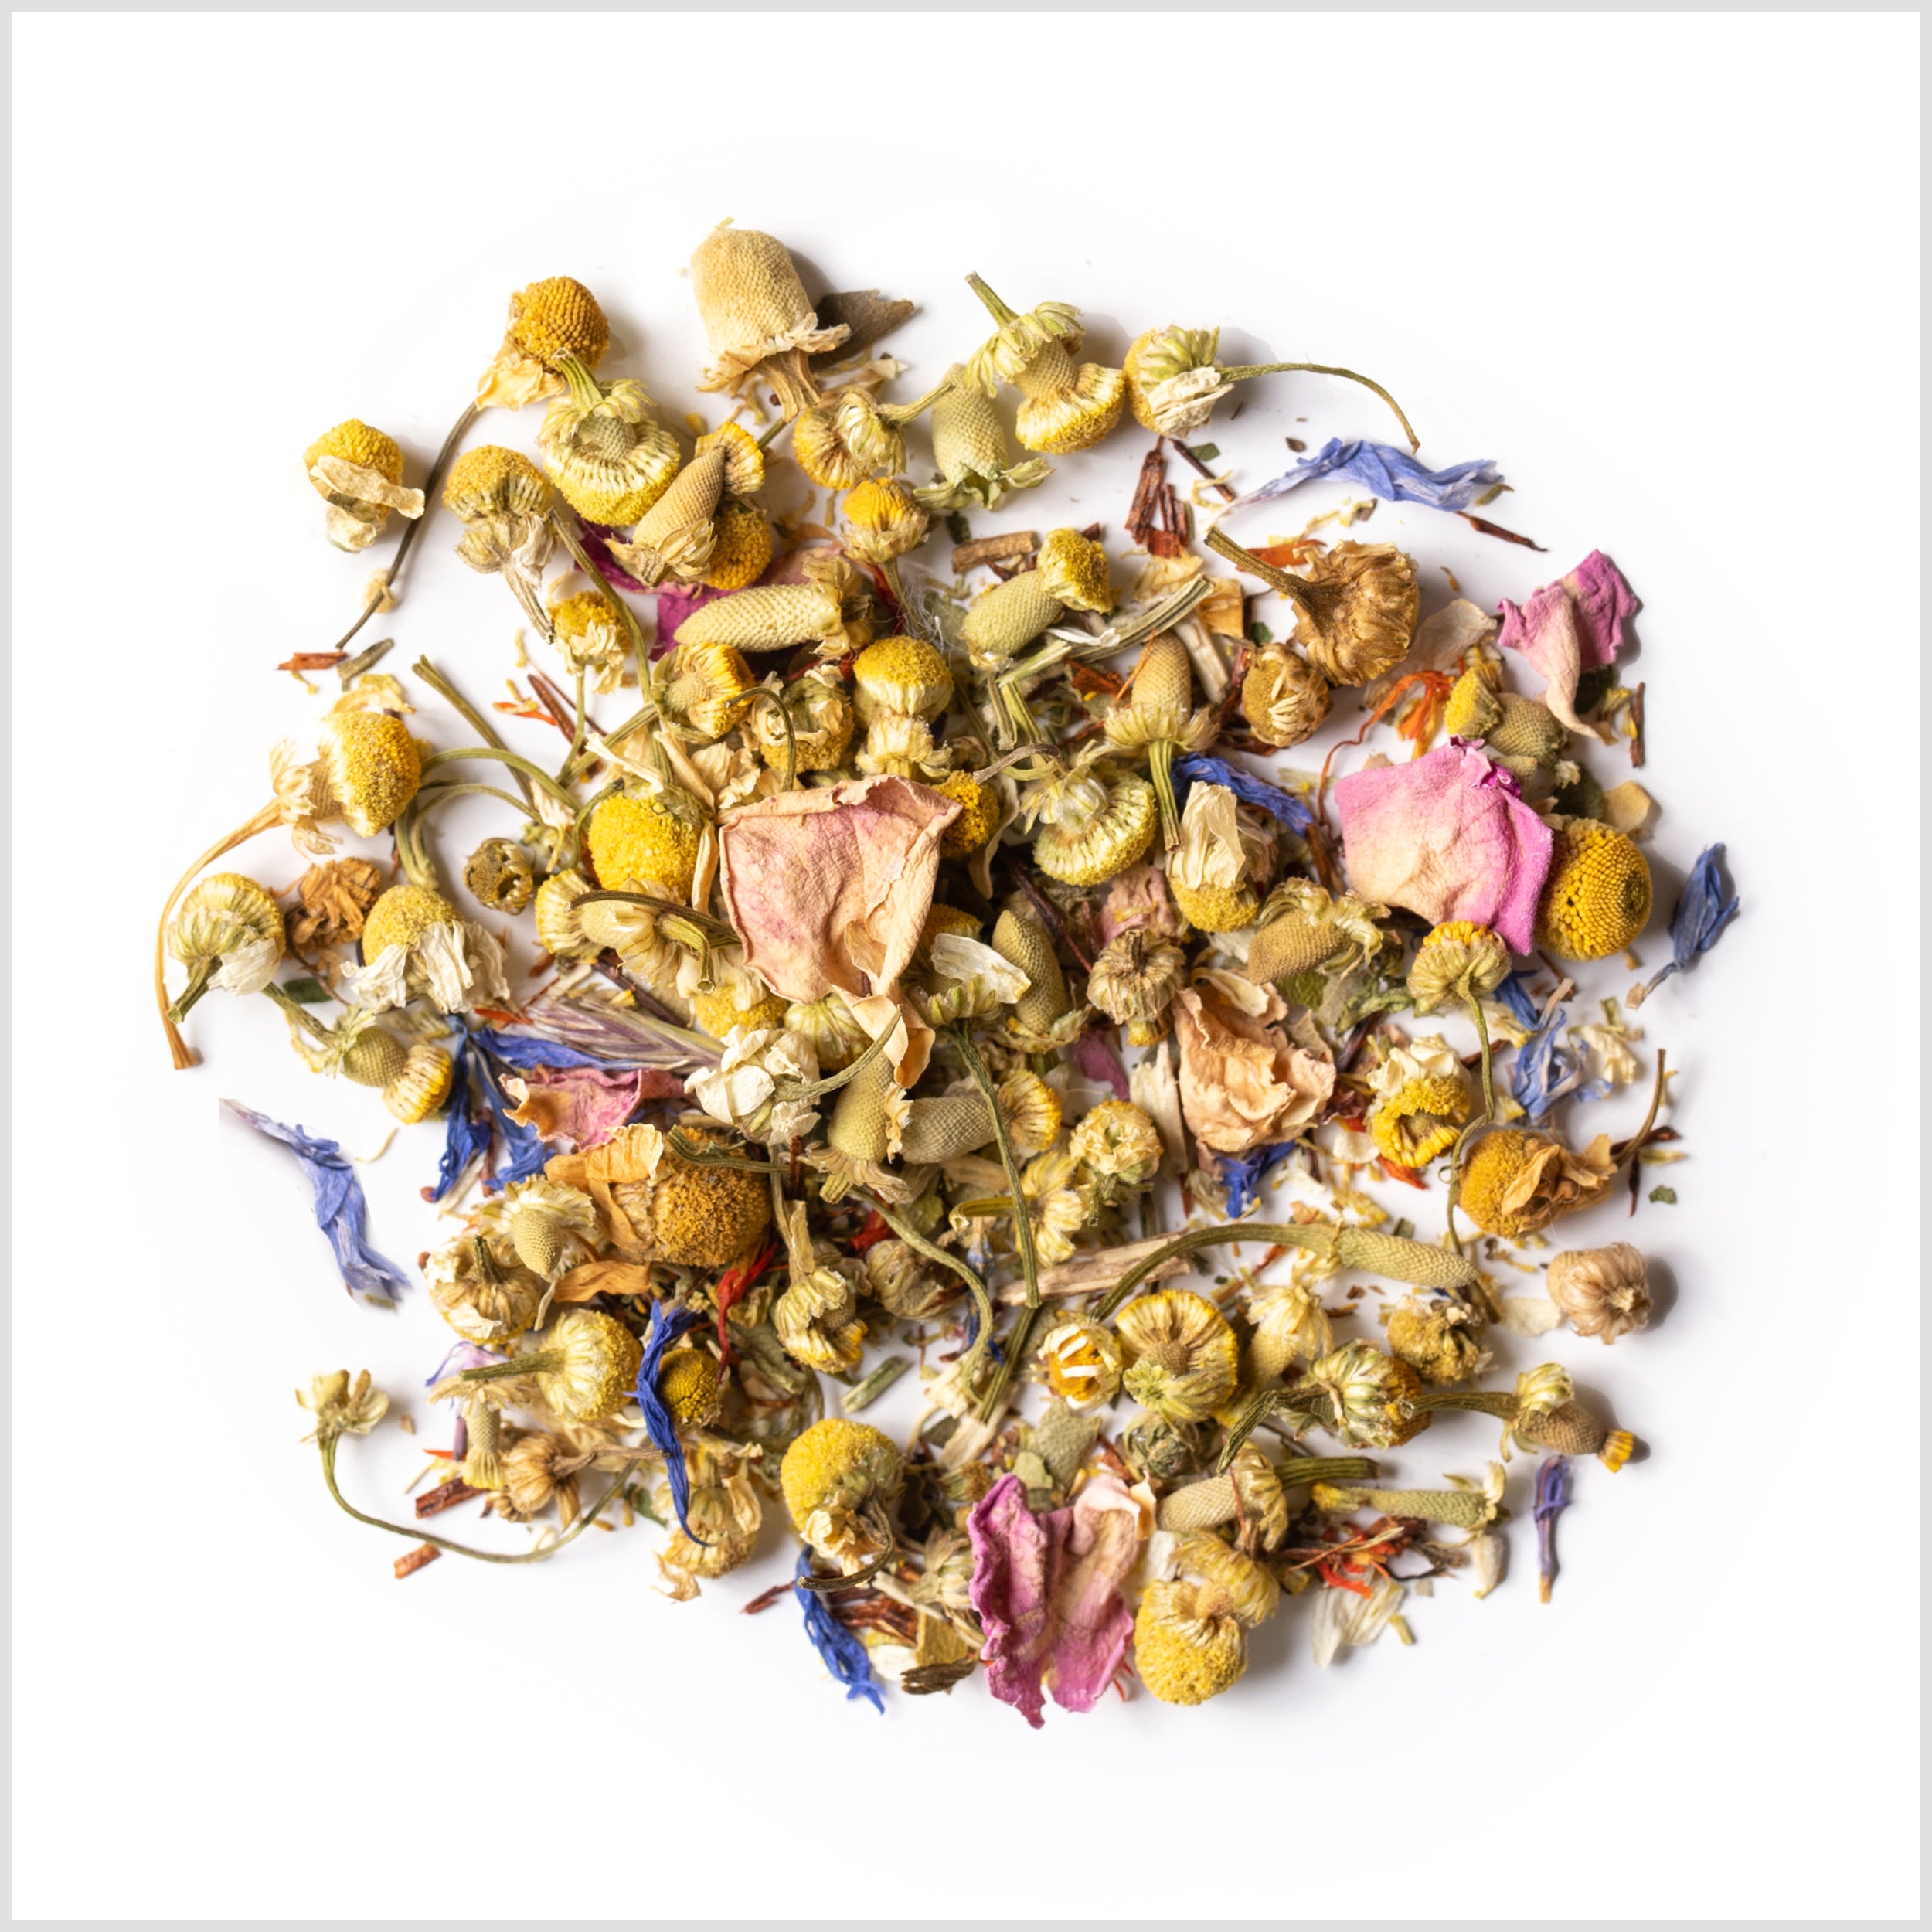 Smith Tea - Best Sellers 3-Pack Herbal, Tea Bundle – Smith Teamaker